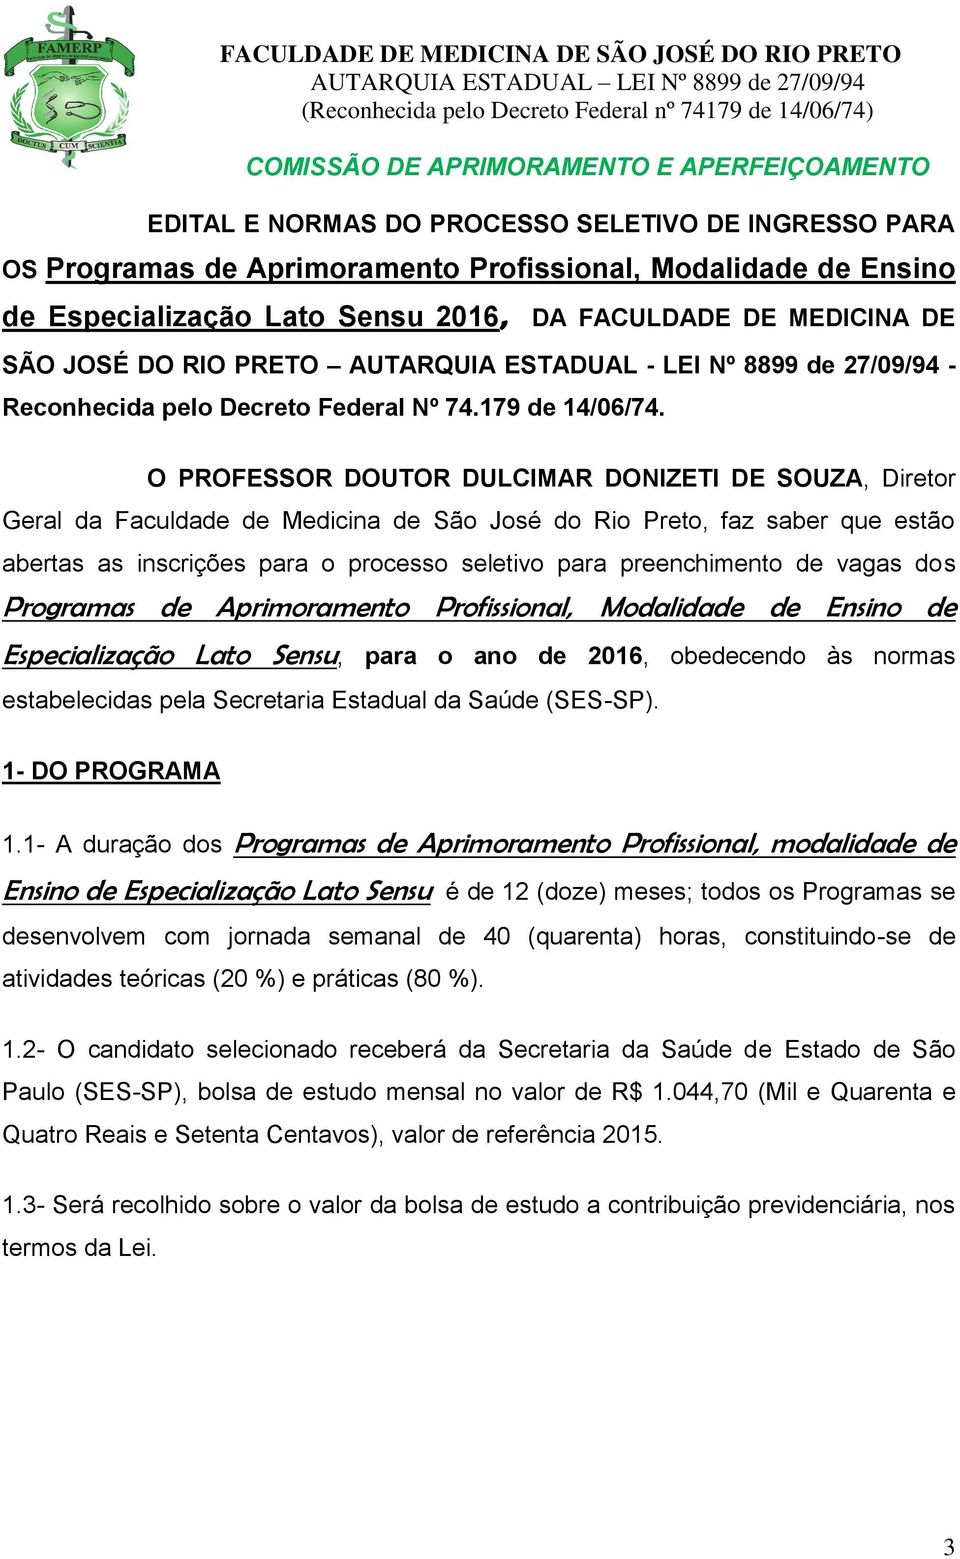 O PROFESSOR DOUTOR DULCIMAR DONIZETI DE SOUZA, Diretor Geral da Faculdade de Medicina de São José do Rio Preto, faz saber que estão abertas as inscrições para o processo seletivo para preenchimento